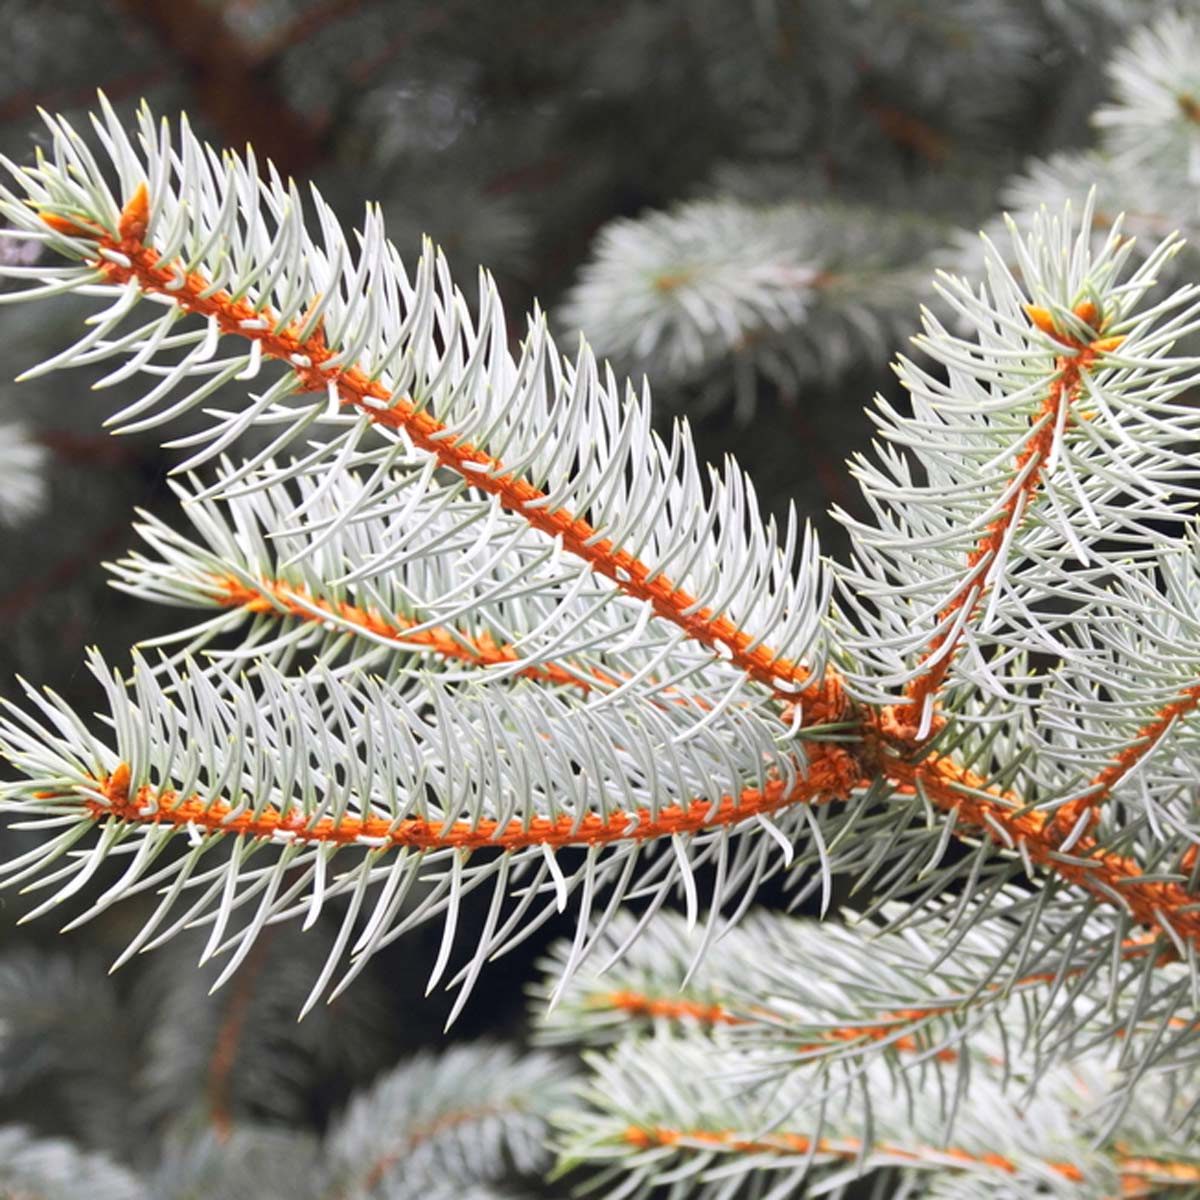 White spruce (picea glauca)